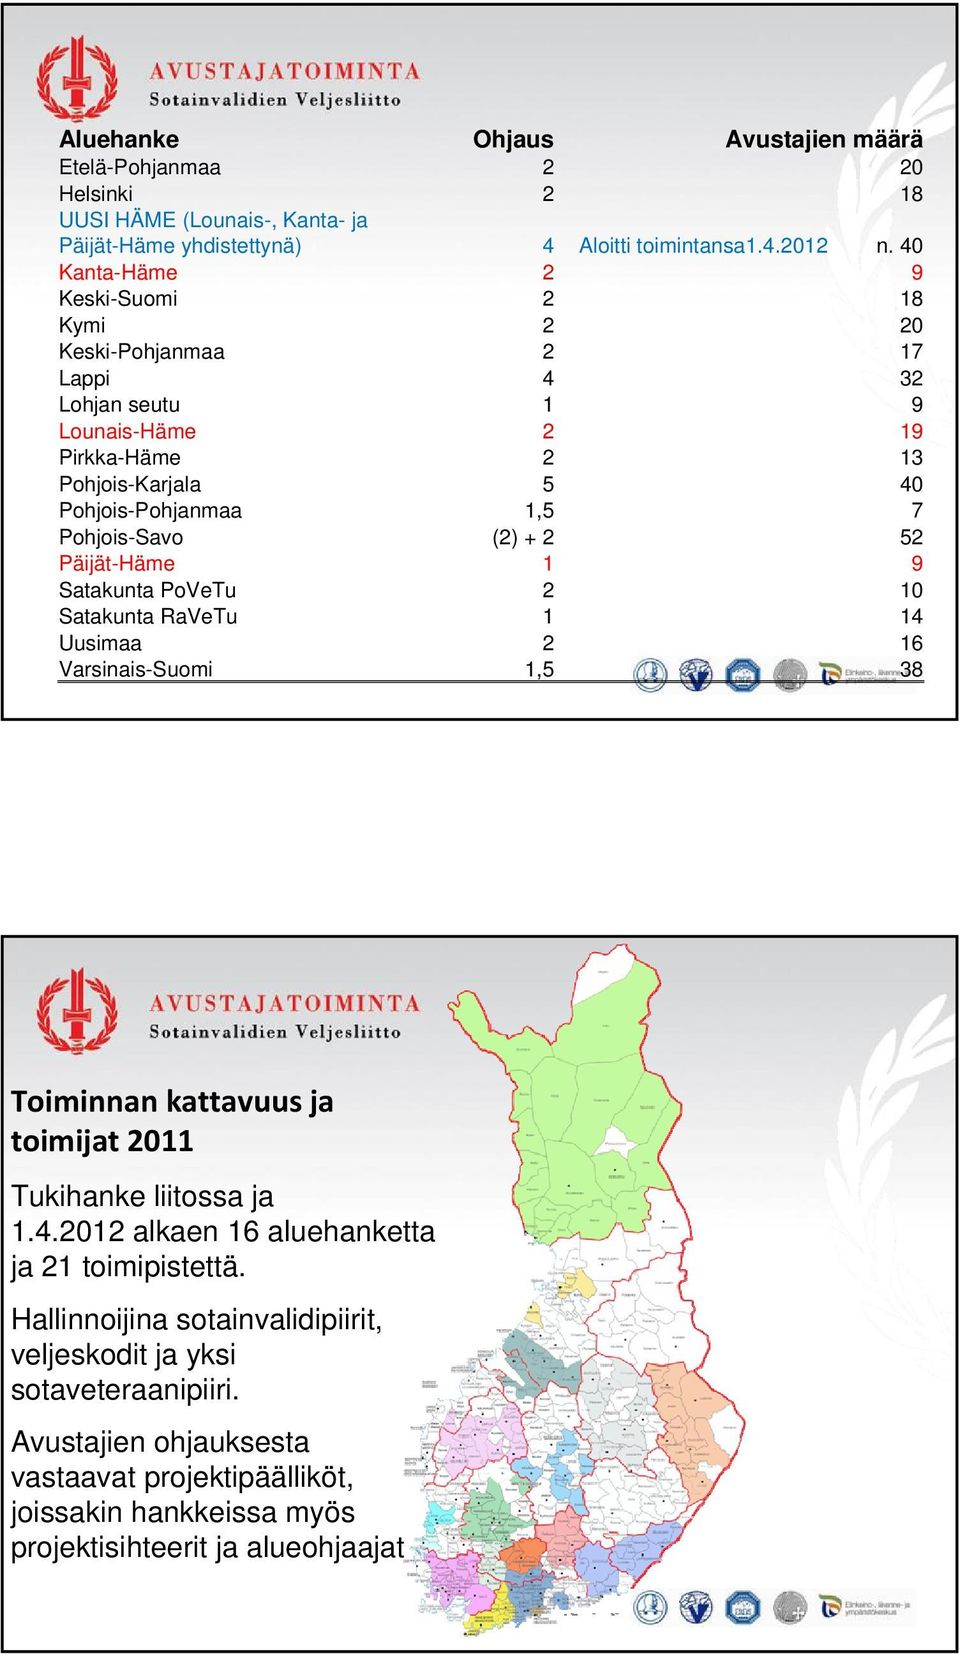 (2) + 2 52 Päijät-Häme 1 9 Satakunta PoVeTu 2 10 Satakunta RaVeTu 1 14 Uusimaa 2 16 Varsinais-Suomi 1,5 38 Toiminnan kattavuus ja toimijat 2011 Tukihanke liitossa ja 1.4.2012 alkaen 16 aluehanketta ja 21 toimipistettä.